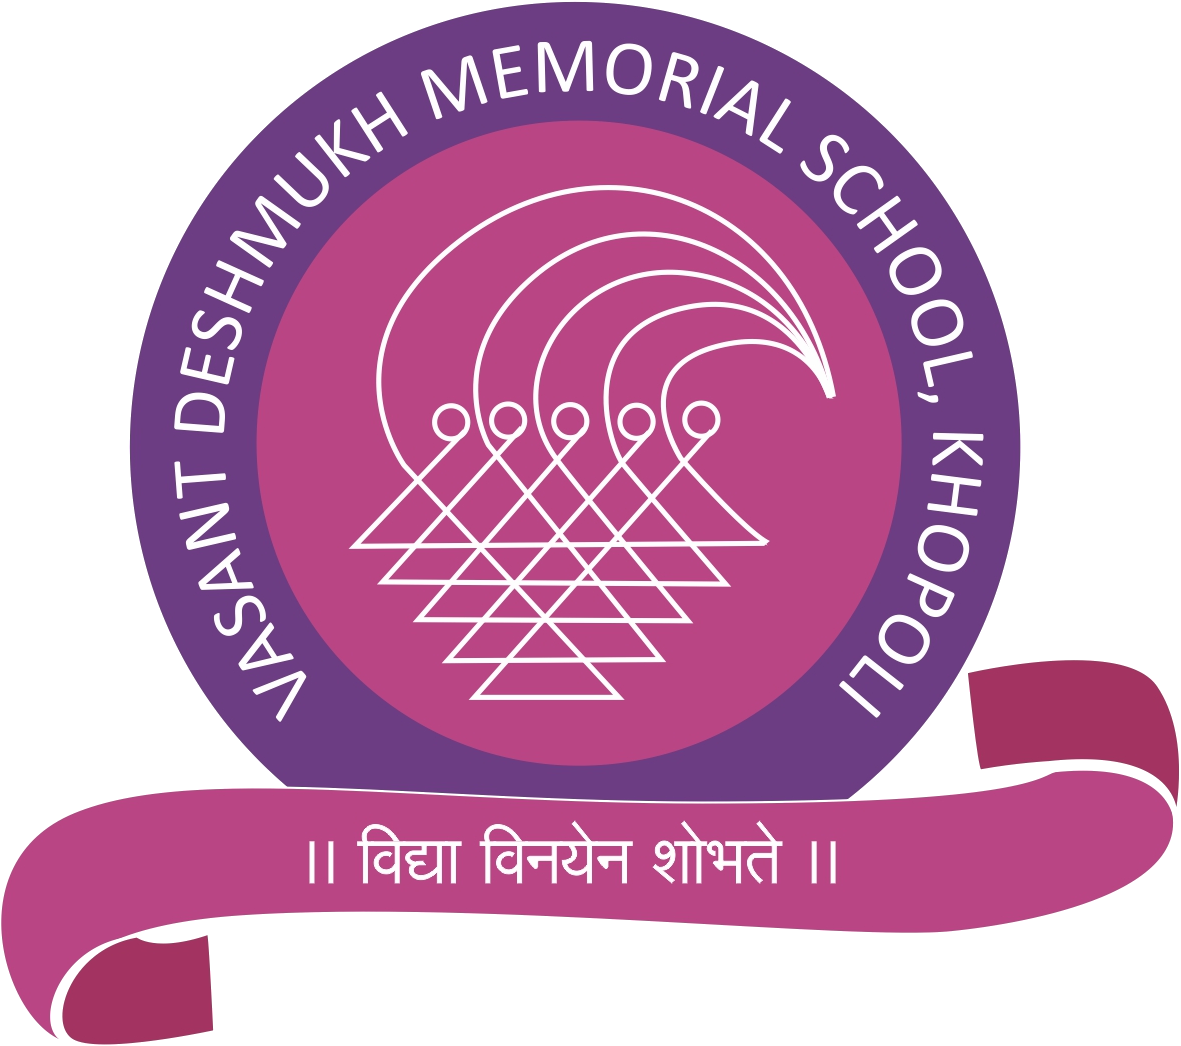 vasant deshmukh memorial school logo